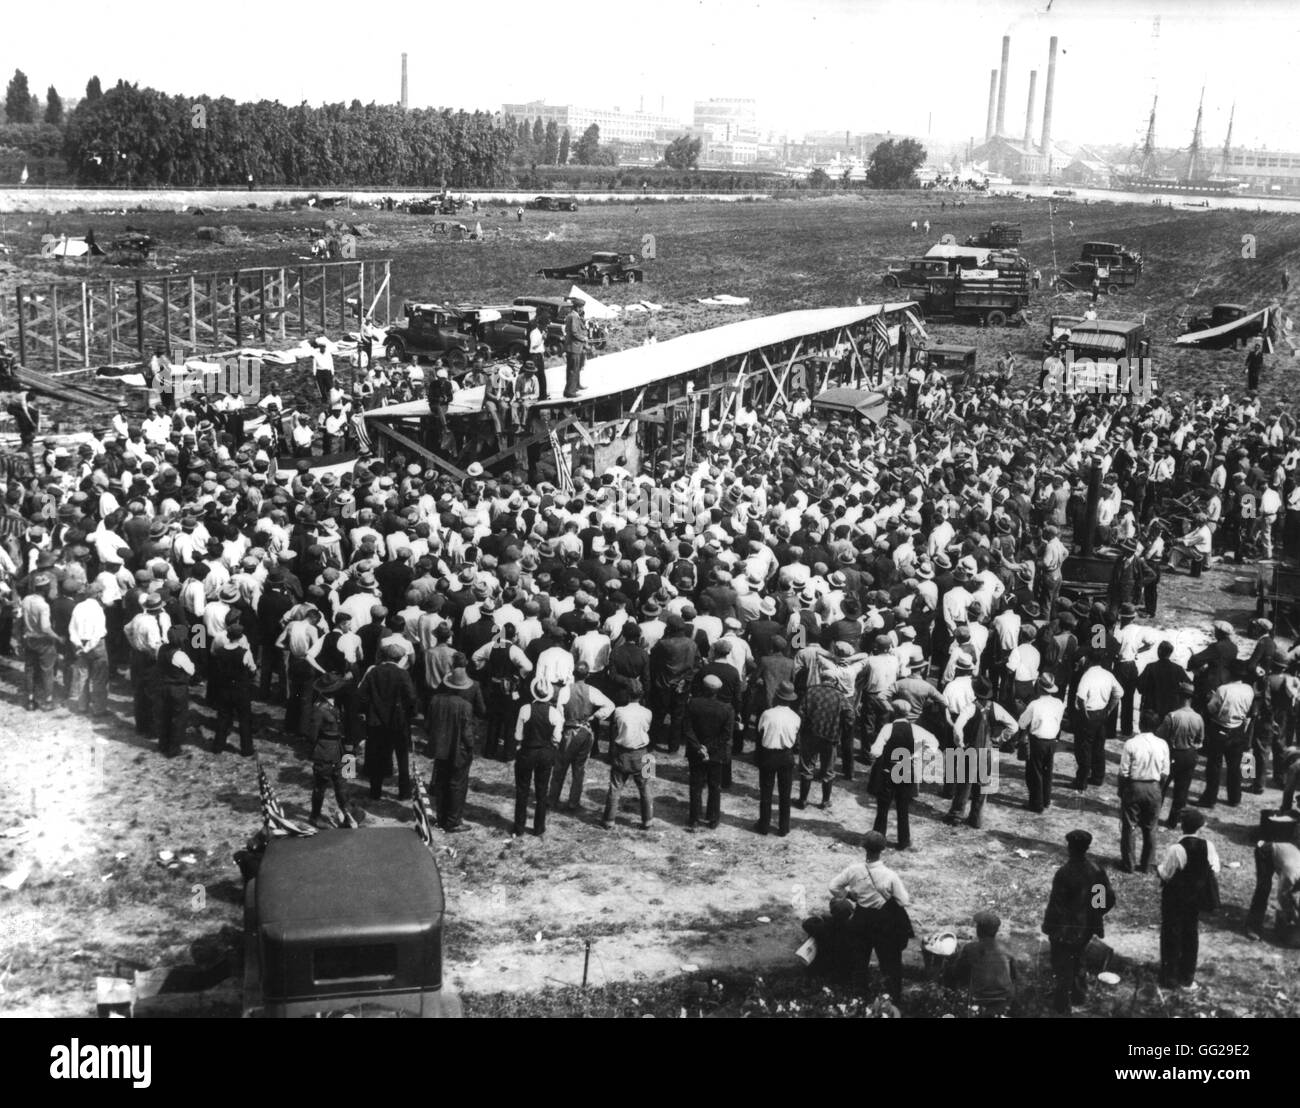 R. Foulkrod addressing the 7,000 'Bonus marchers' in Washington June 1932 United States National archives. Washington Stock Photo